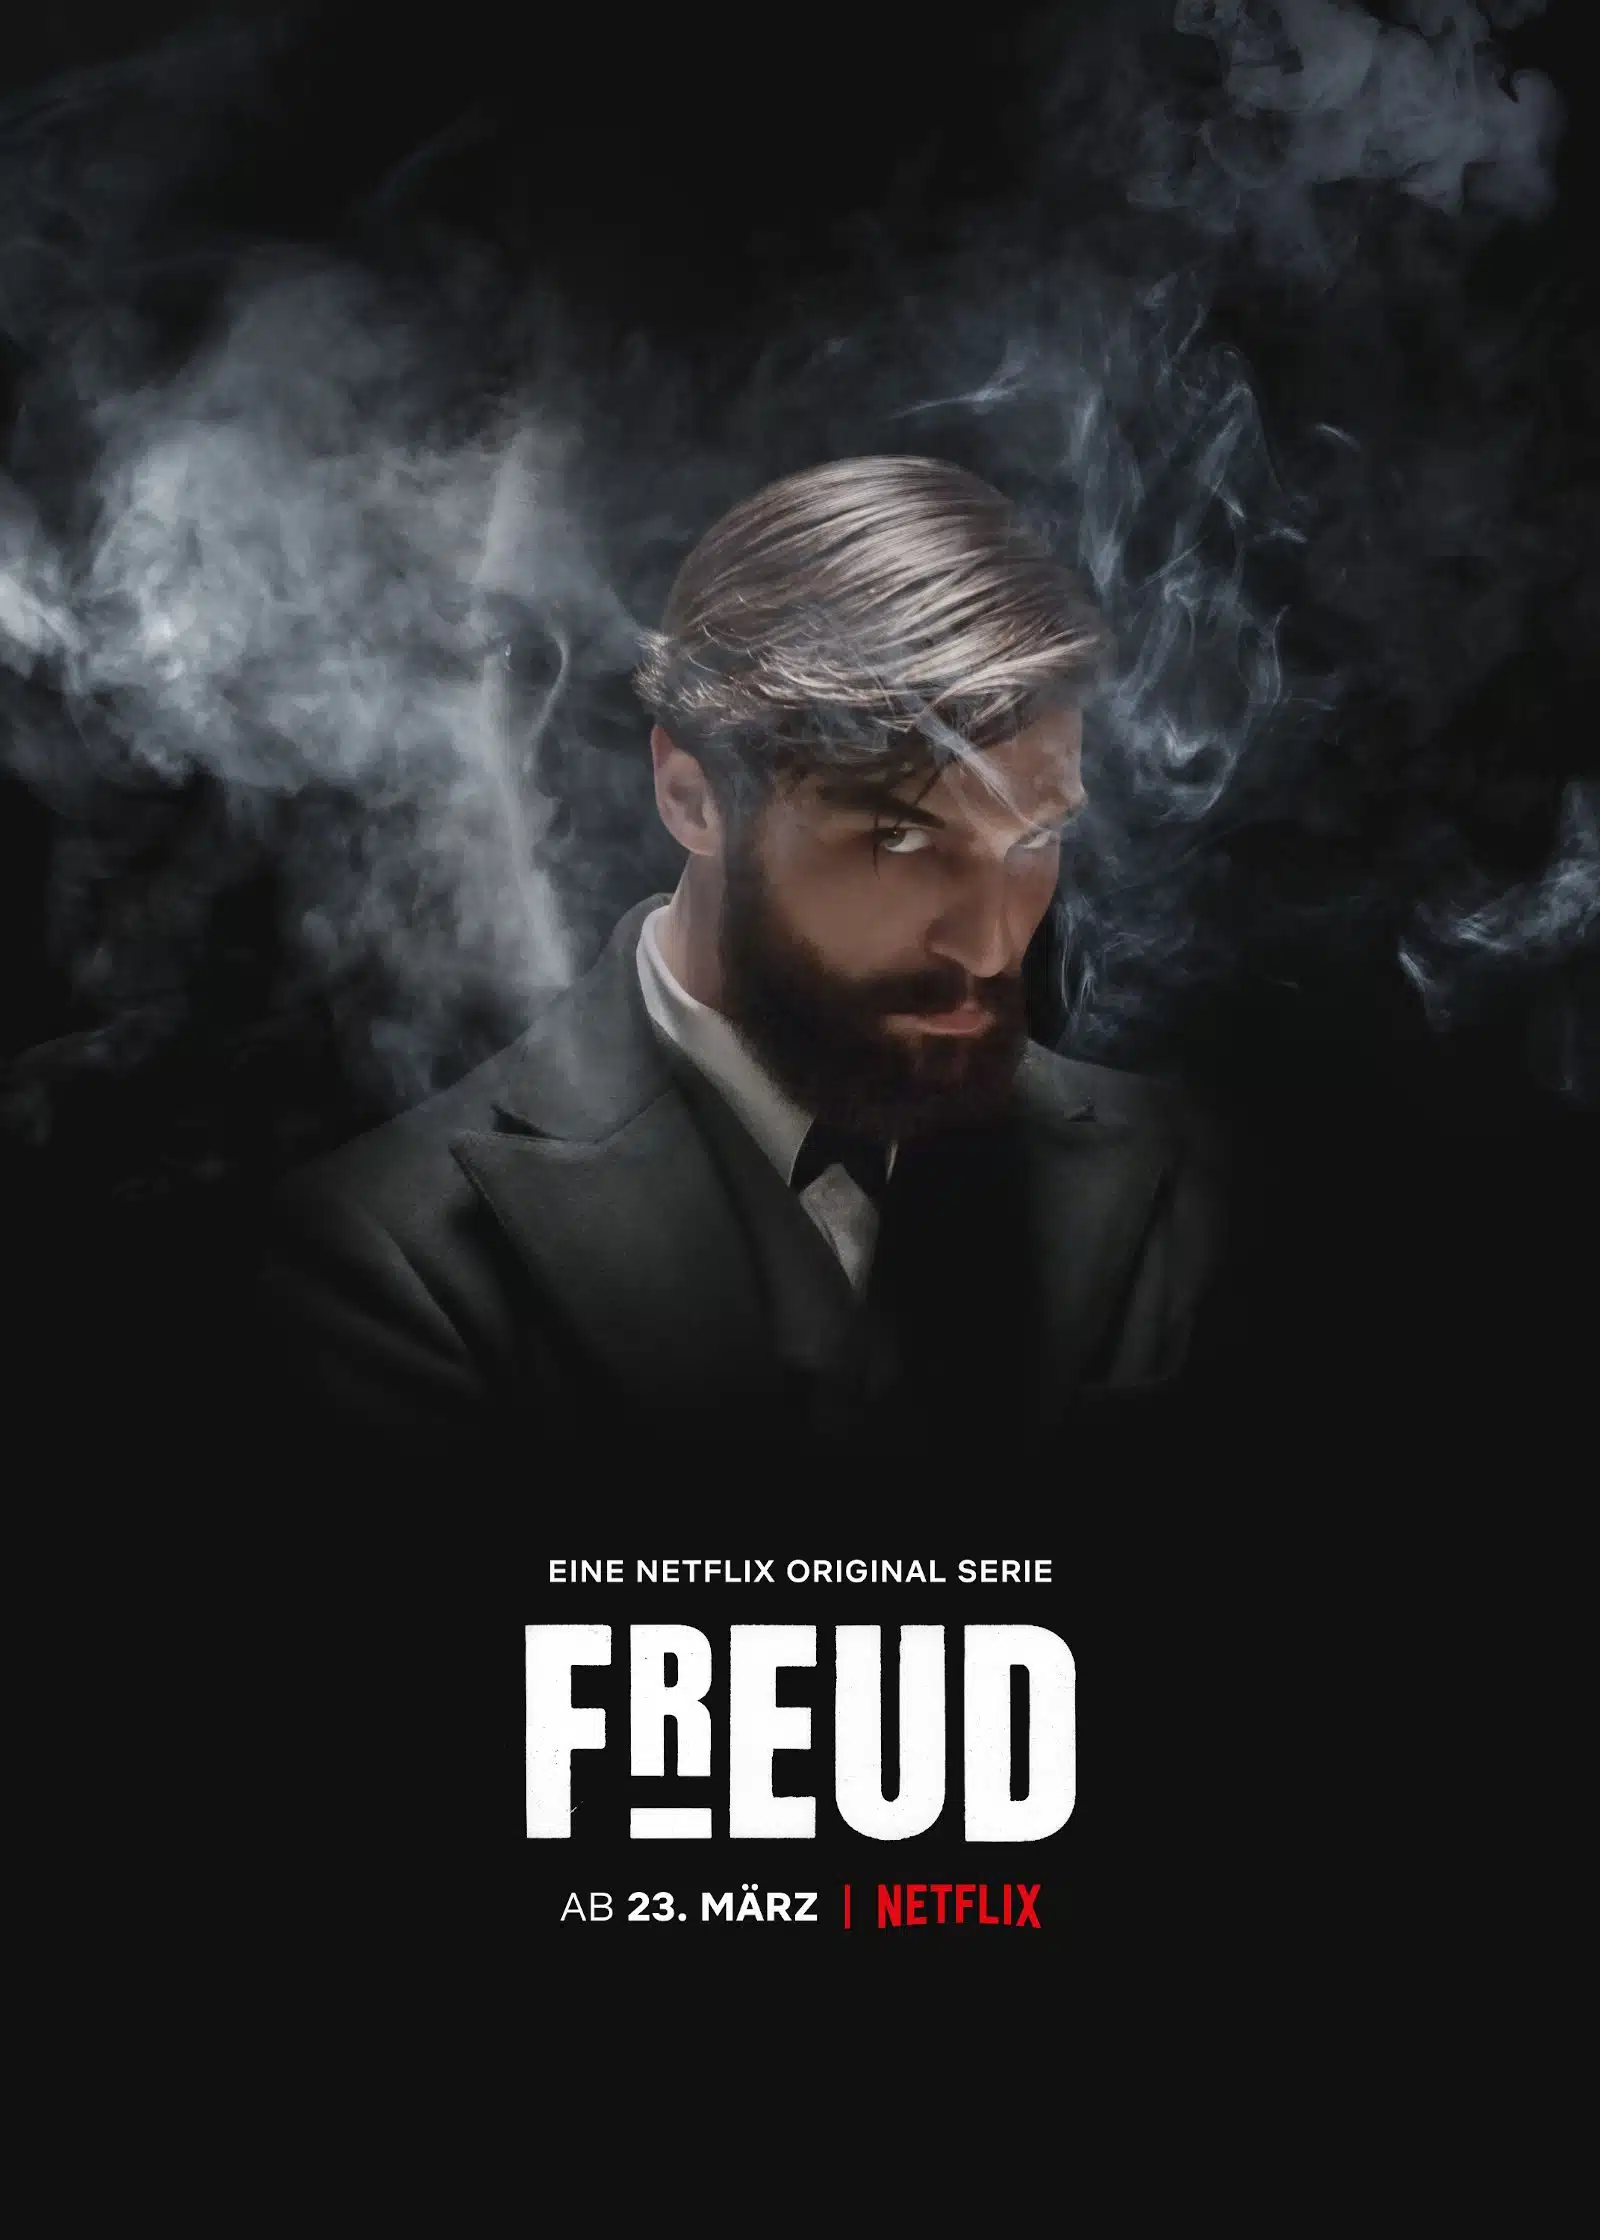 Freud: analisi psicologica della prima stagione della serie Netflix